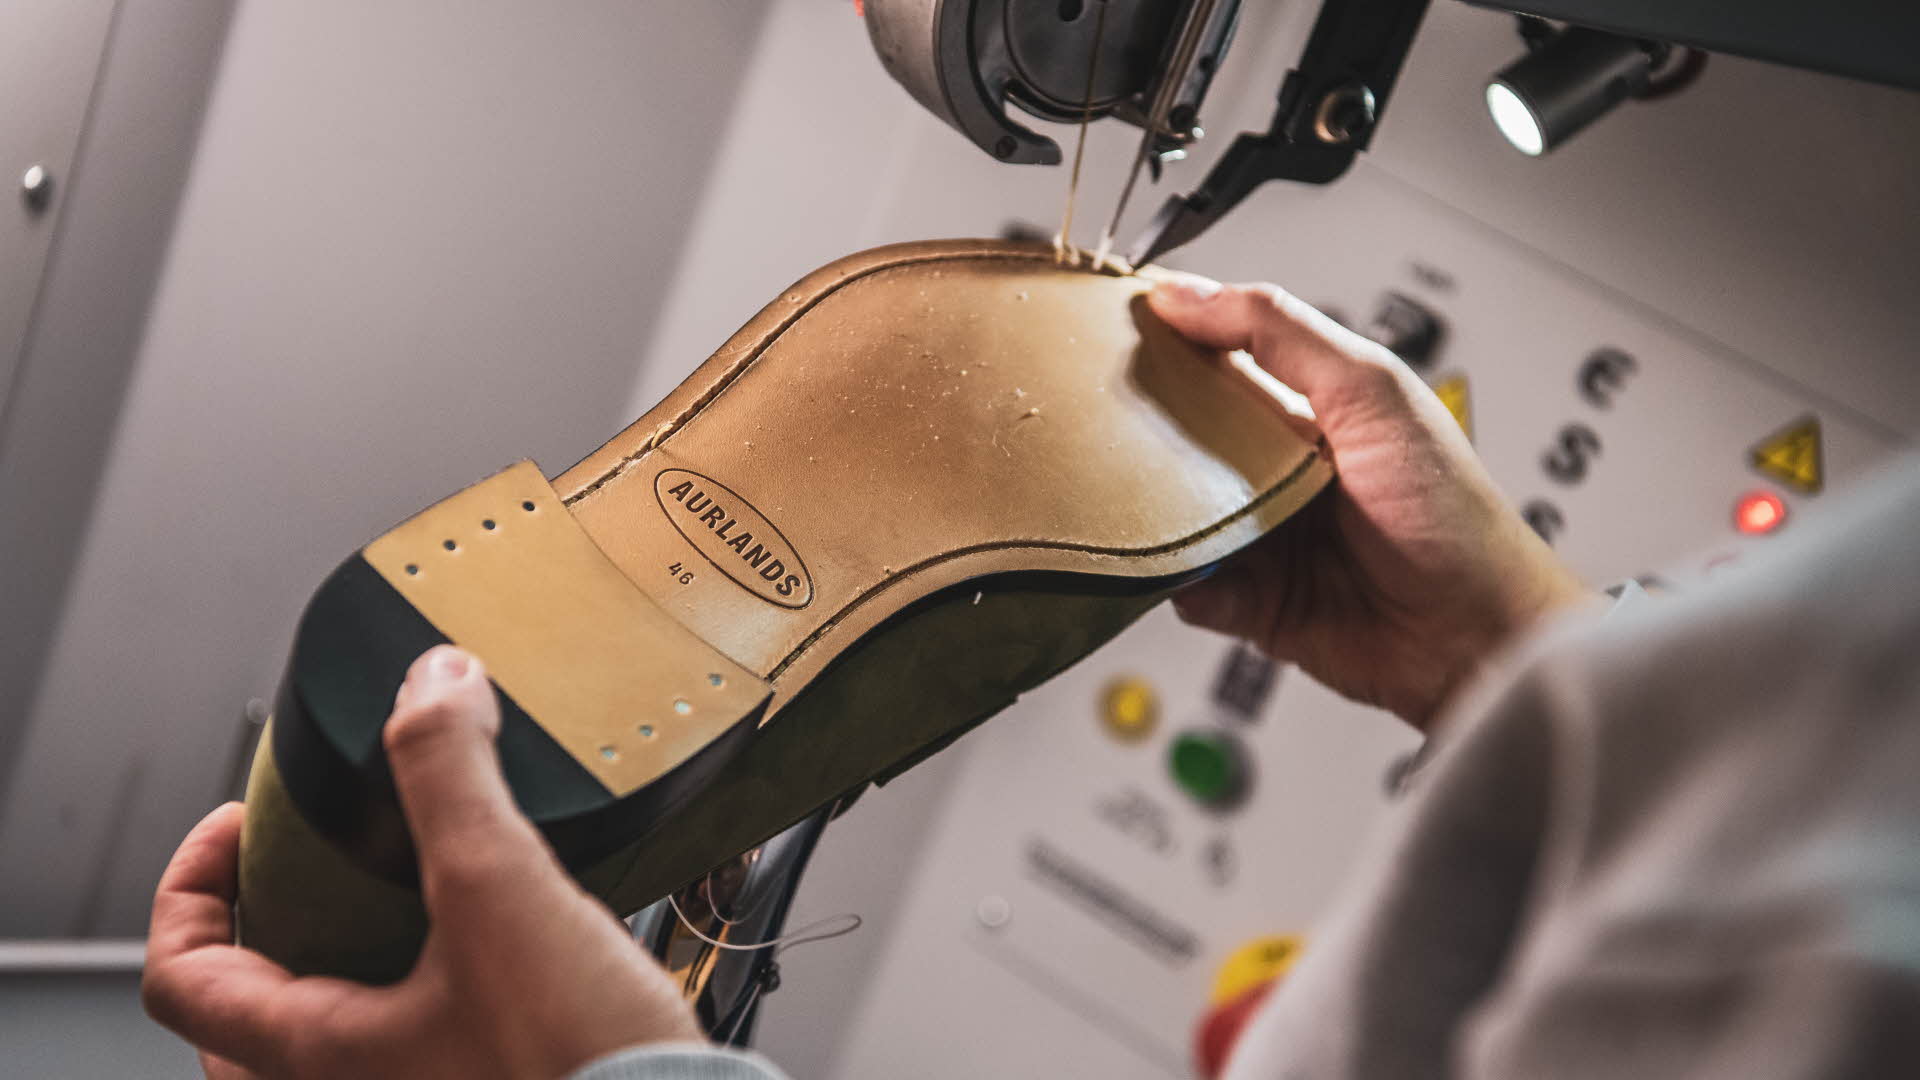 Un cordonnier coud la semelle d’une chaussure d’Aurland. Le nouveau logo d’Aurland apparaît dans le mini projecteur attaché à la machine à coudre.